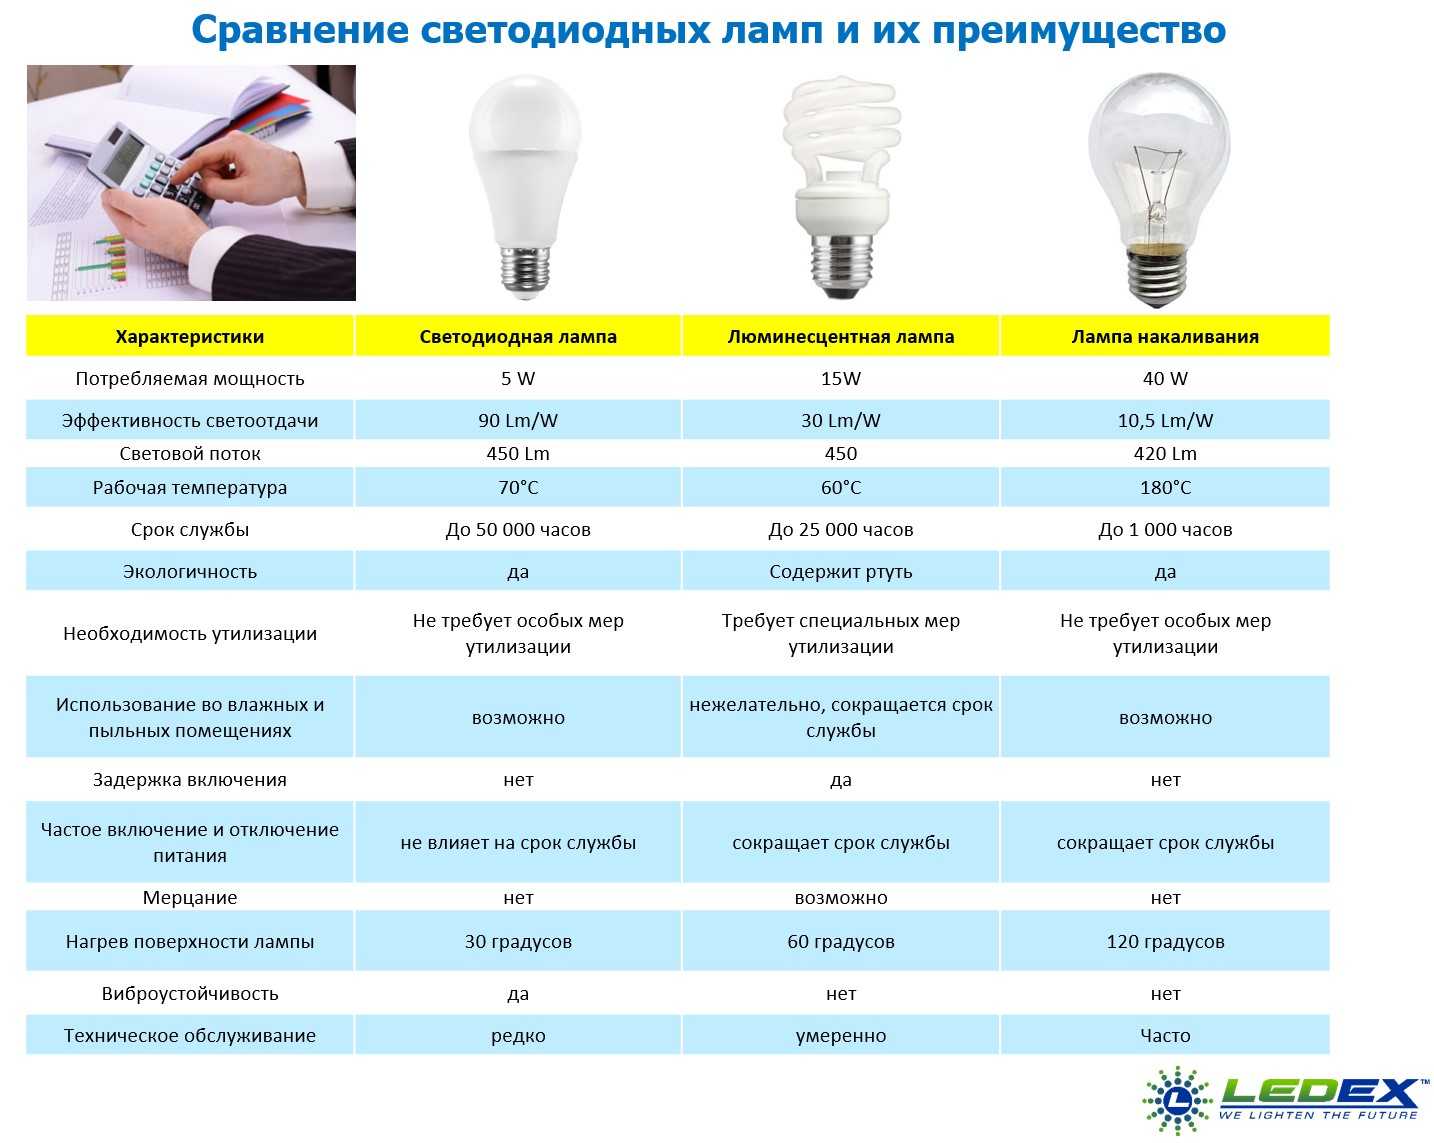 Характеристики светодиодов: потребление тока, напряжение, мощность и светоотдача